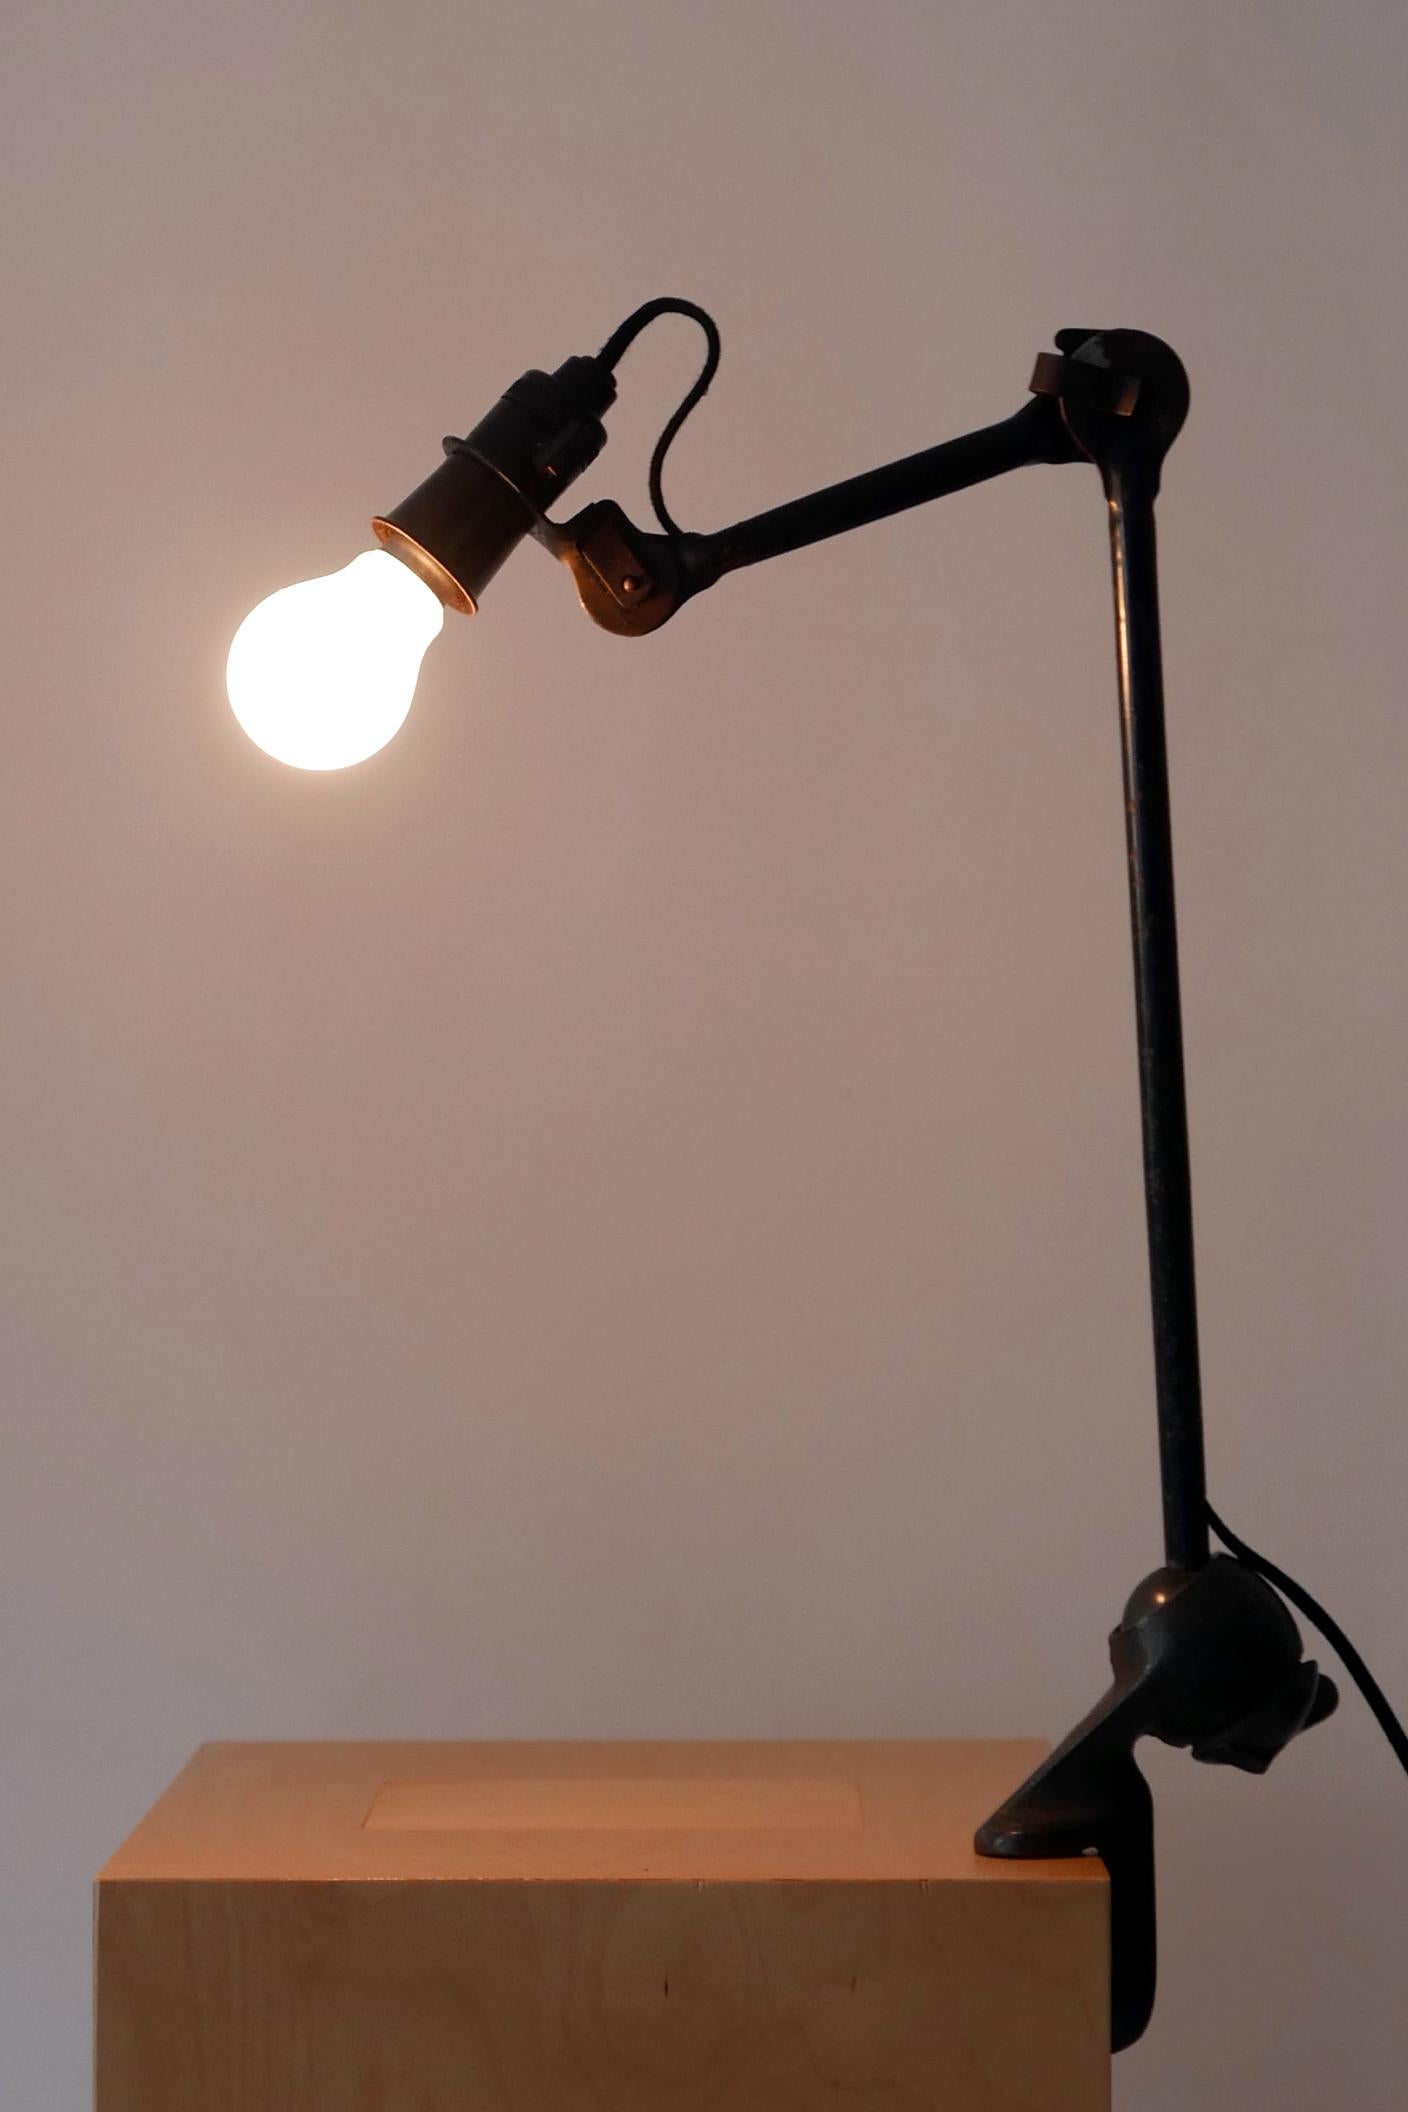 clamp task lamp